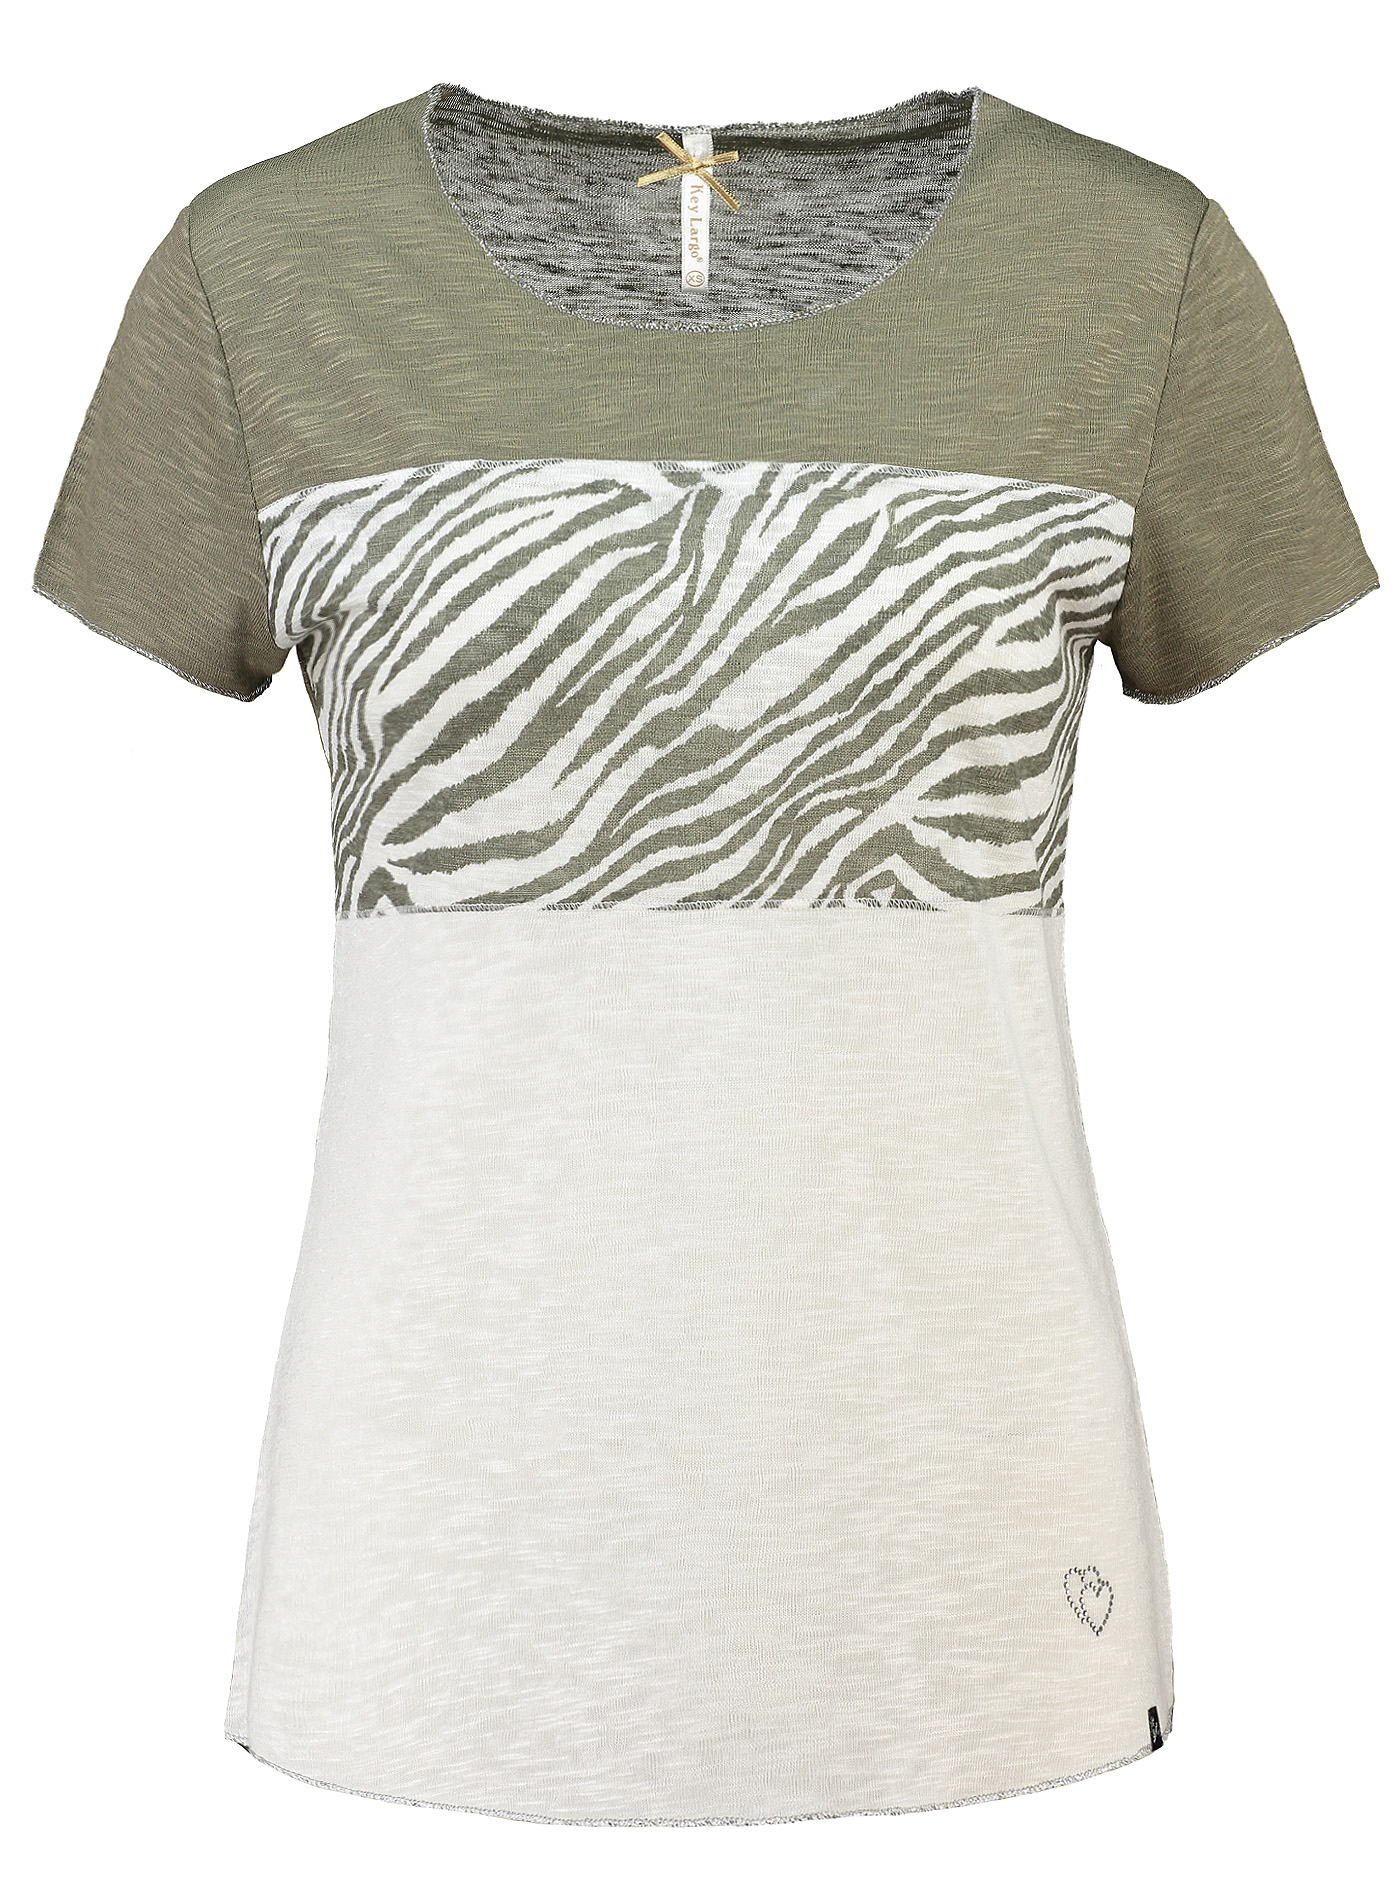 Zebra Rundhals T Shirt Mit Partiellem Zebra Aufdruck